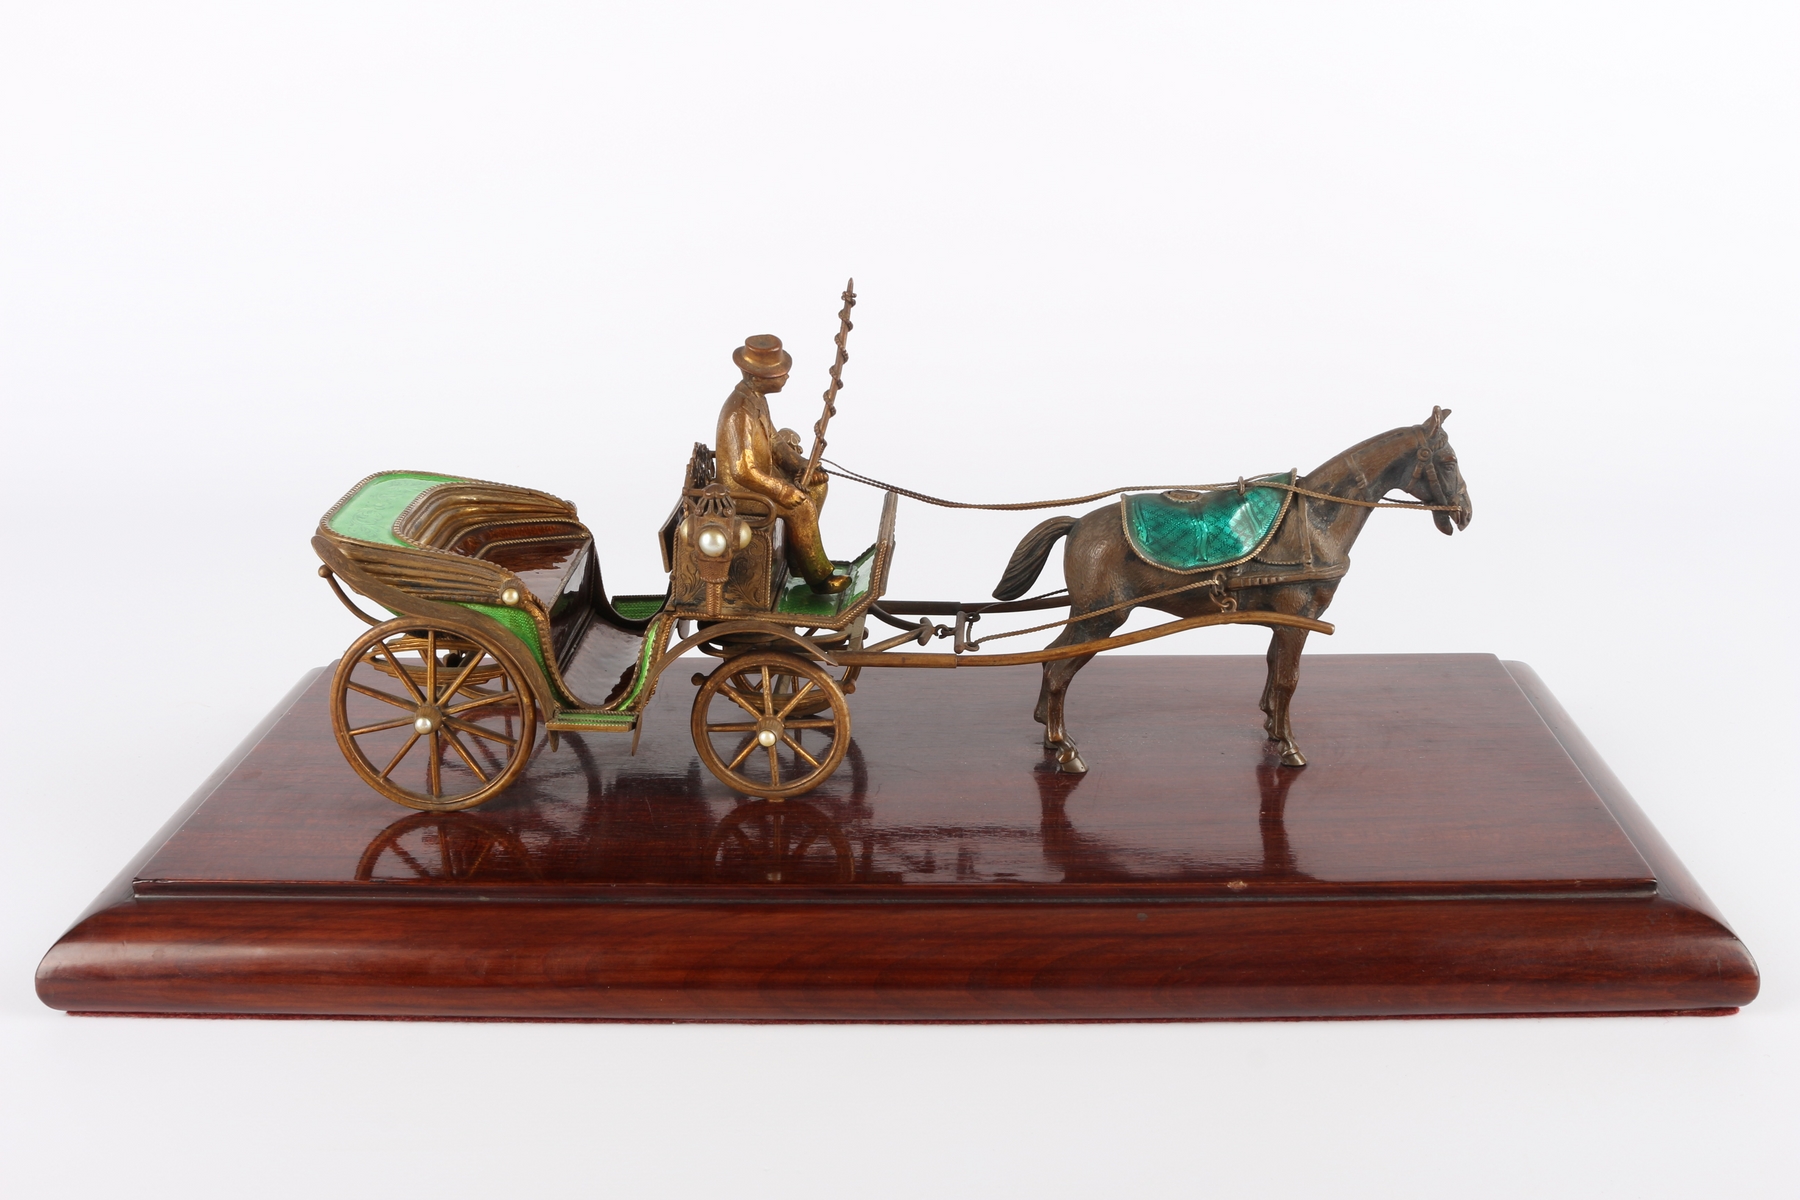 Wiener Pferdekutsche, horse carriage, - Image 2 of 6